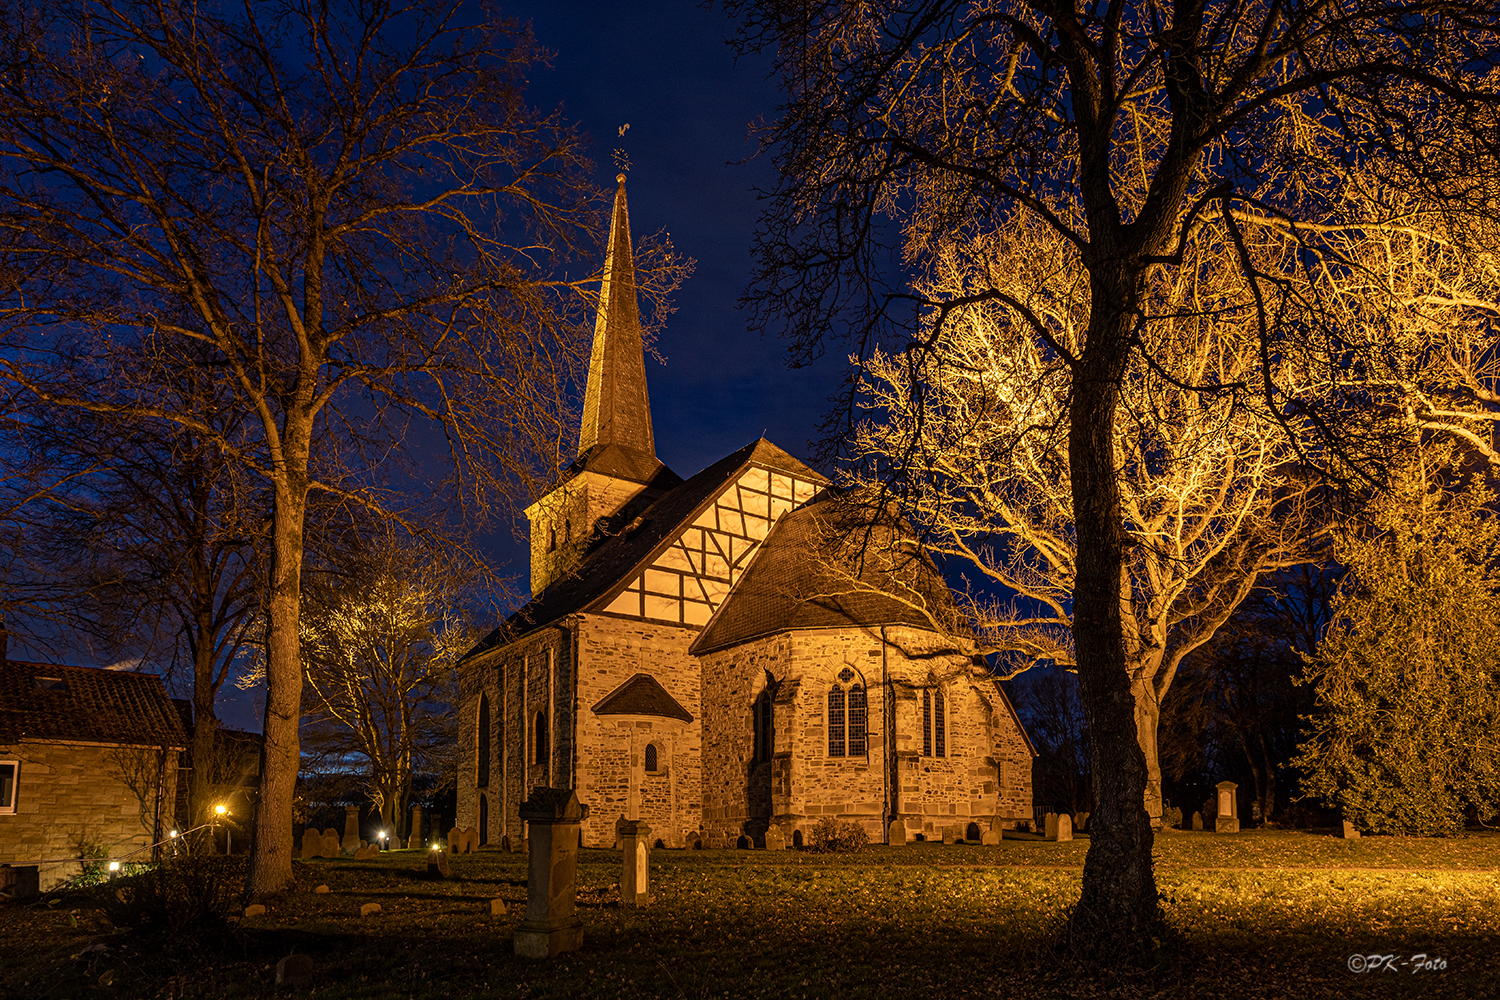 Evgl. Dorfkirche Bochum-Stiepel aus dem 11. Jahrhundert (Ursprungsbau). Kulturdenkmal des Ruhrgebiets